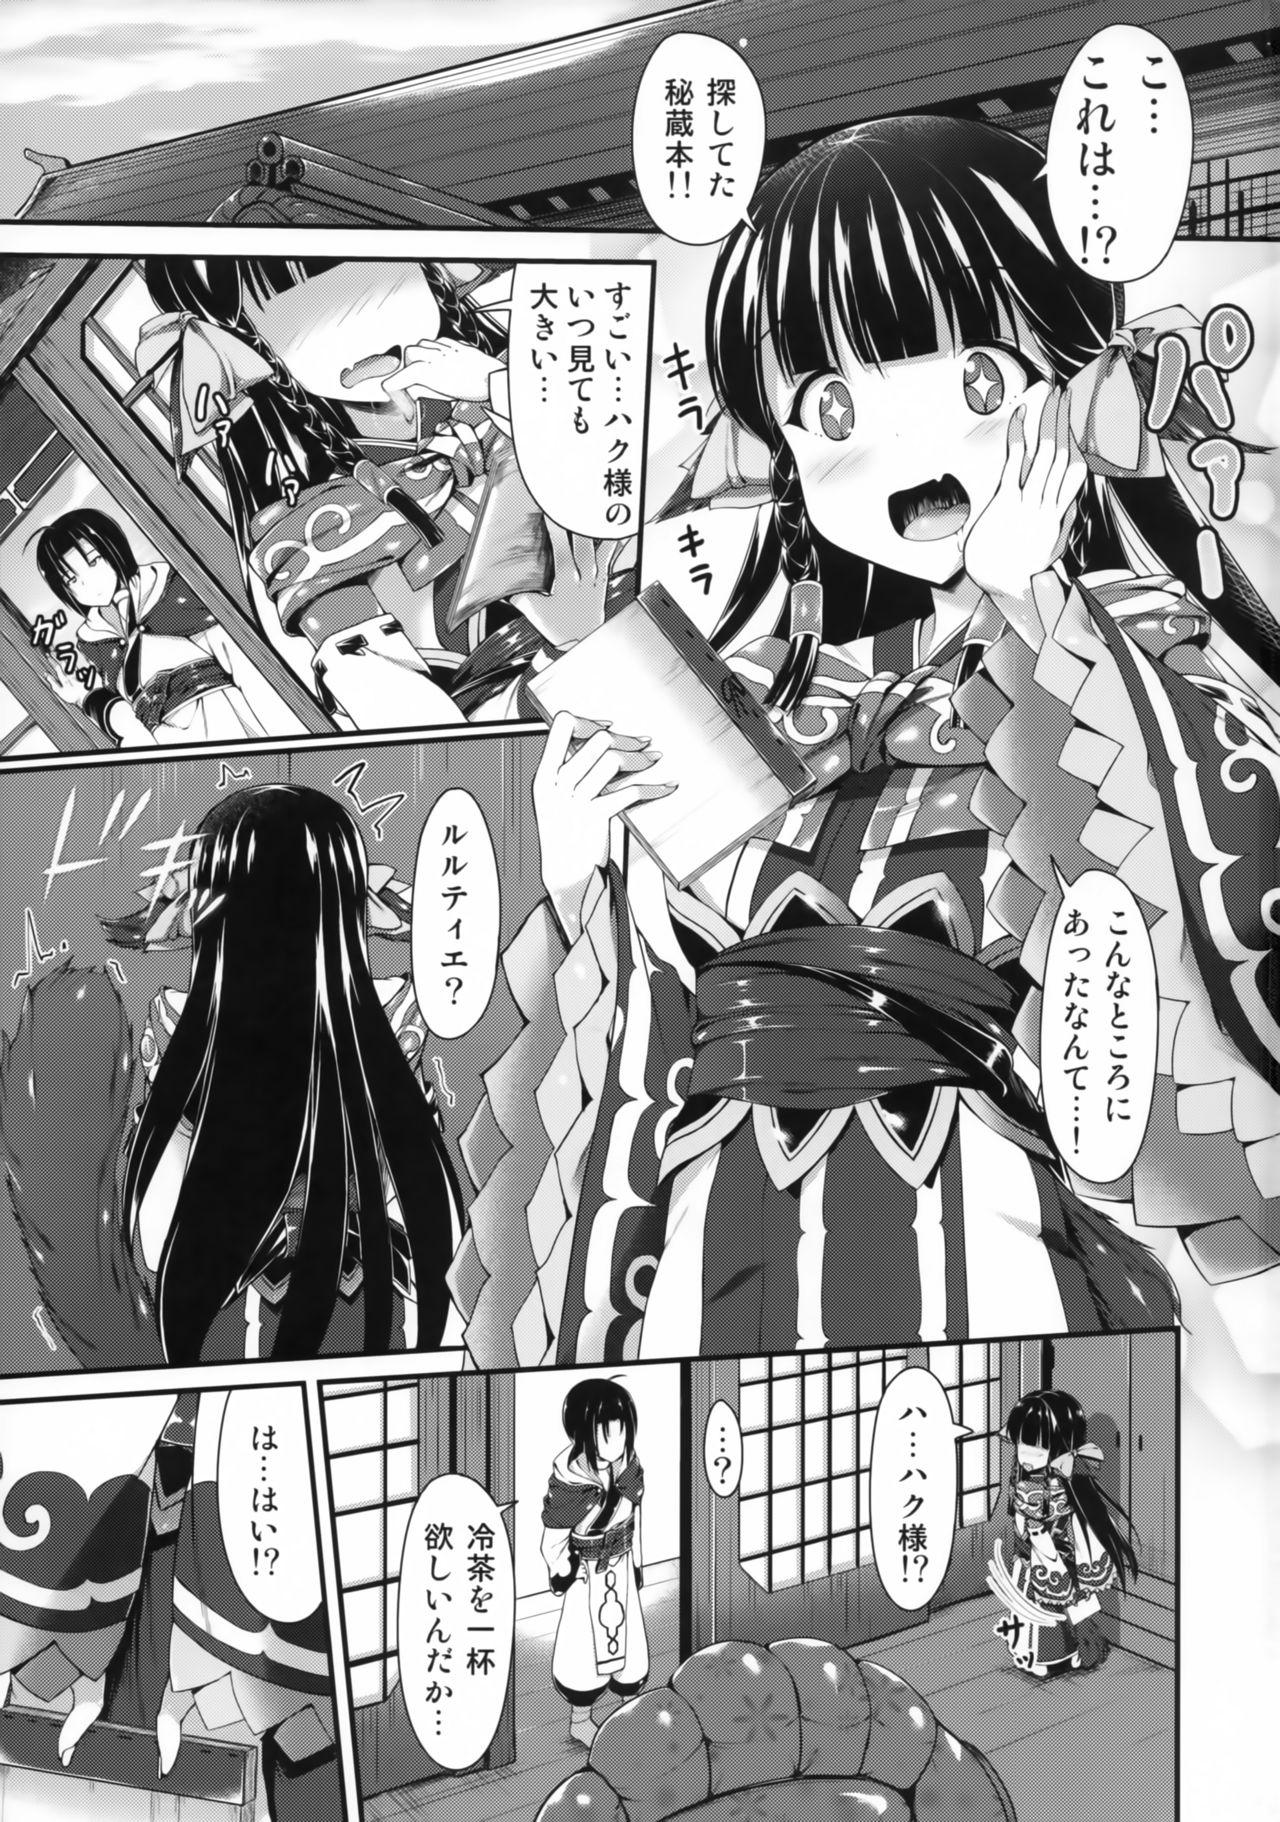 Secret Haku-sama no Monotte Ookii no? - Utawarerumono itsuwari no kamen Athletic - Page 2